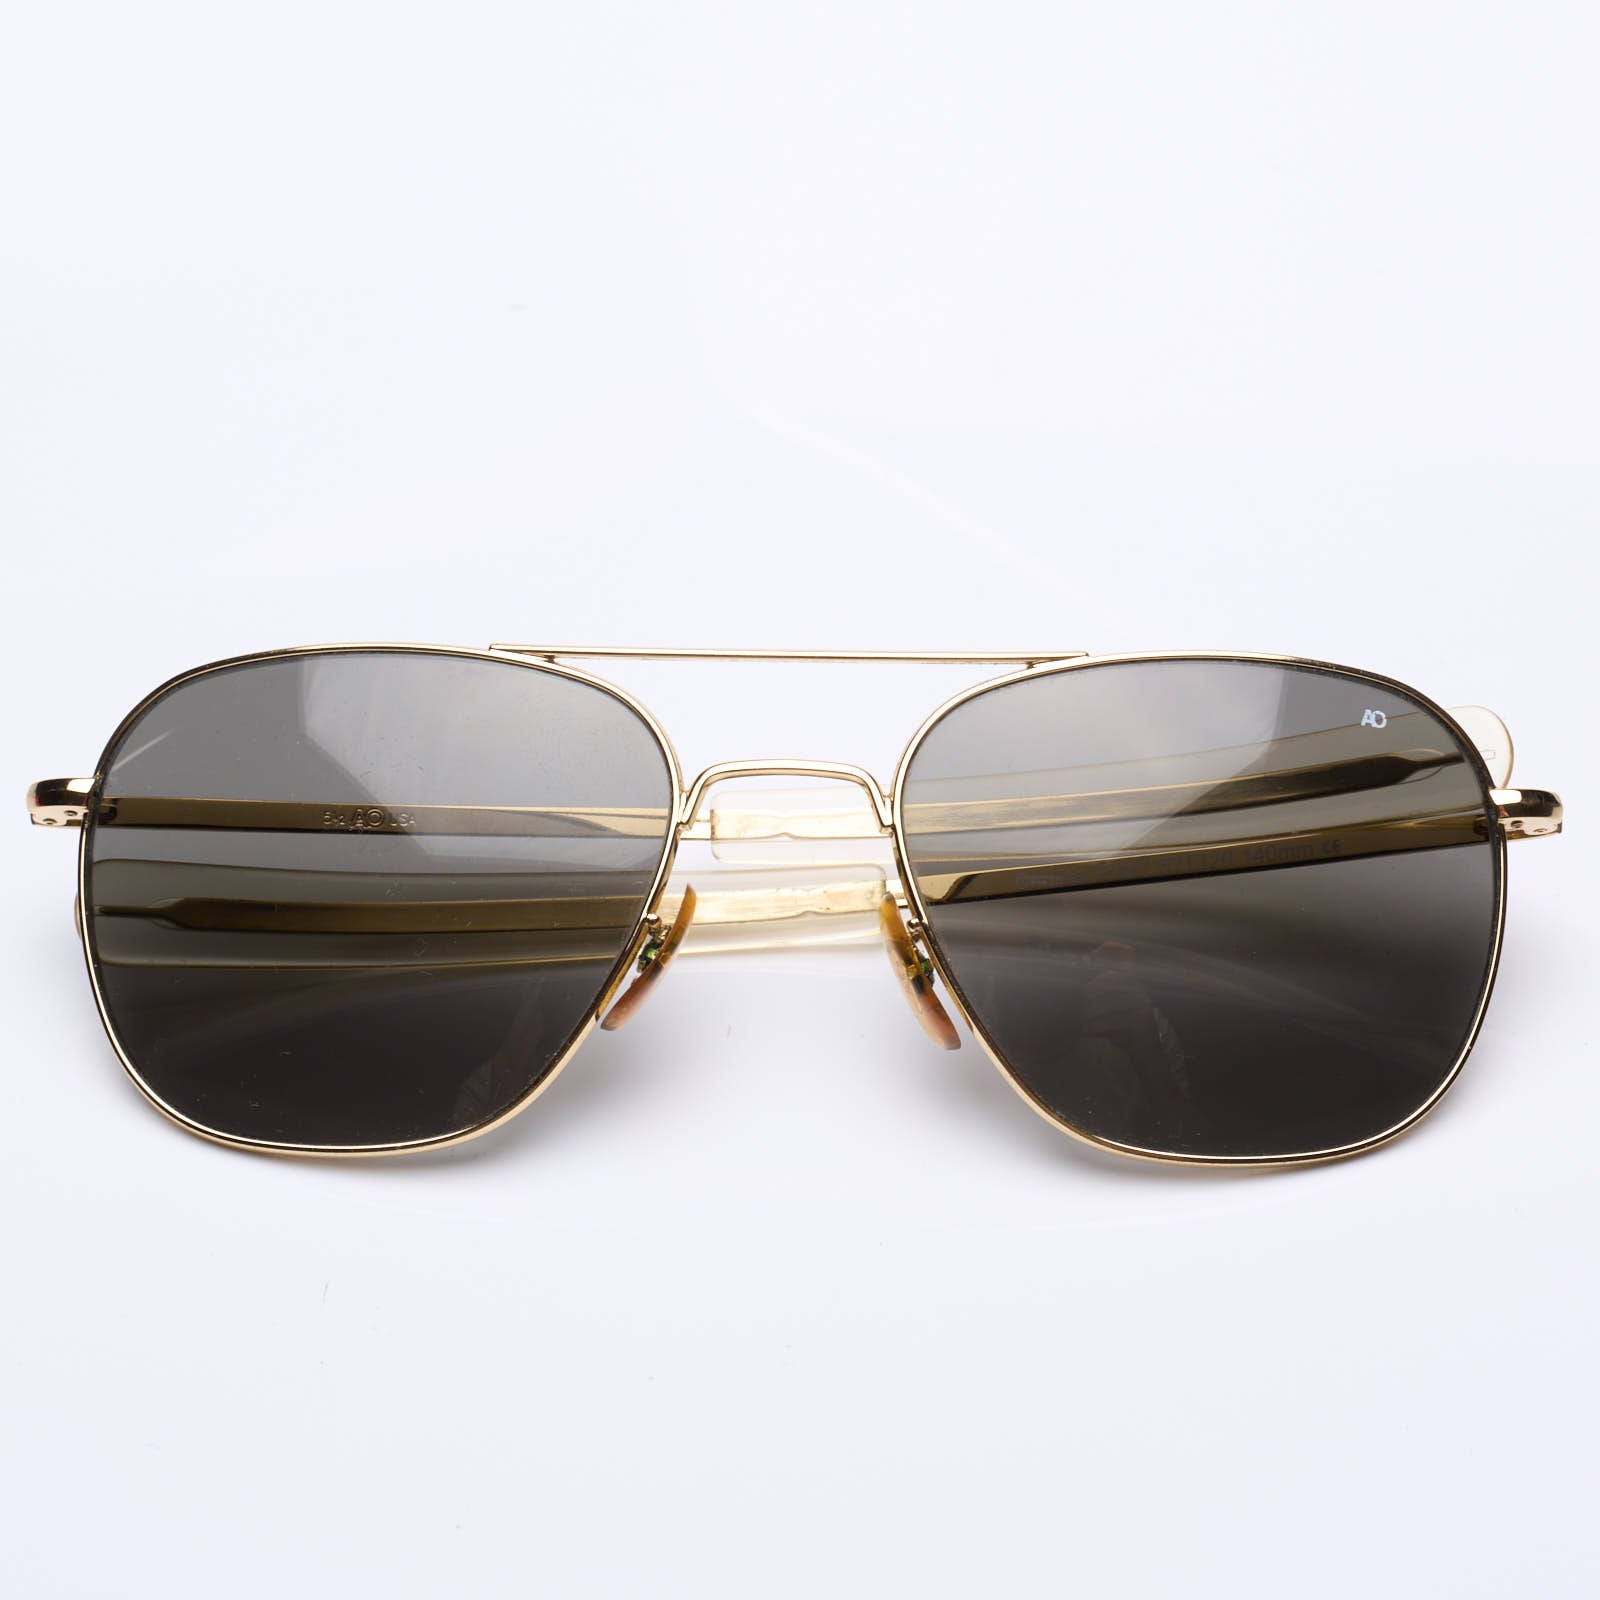 Vintage AMERICAN OPTICAL AO 57 Command Gold Original Pilot Sunglasses